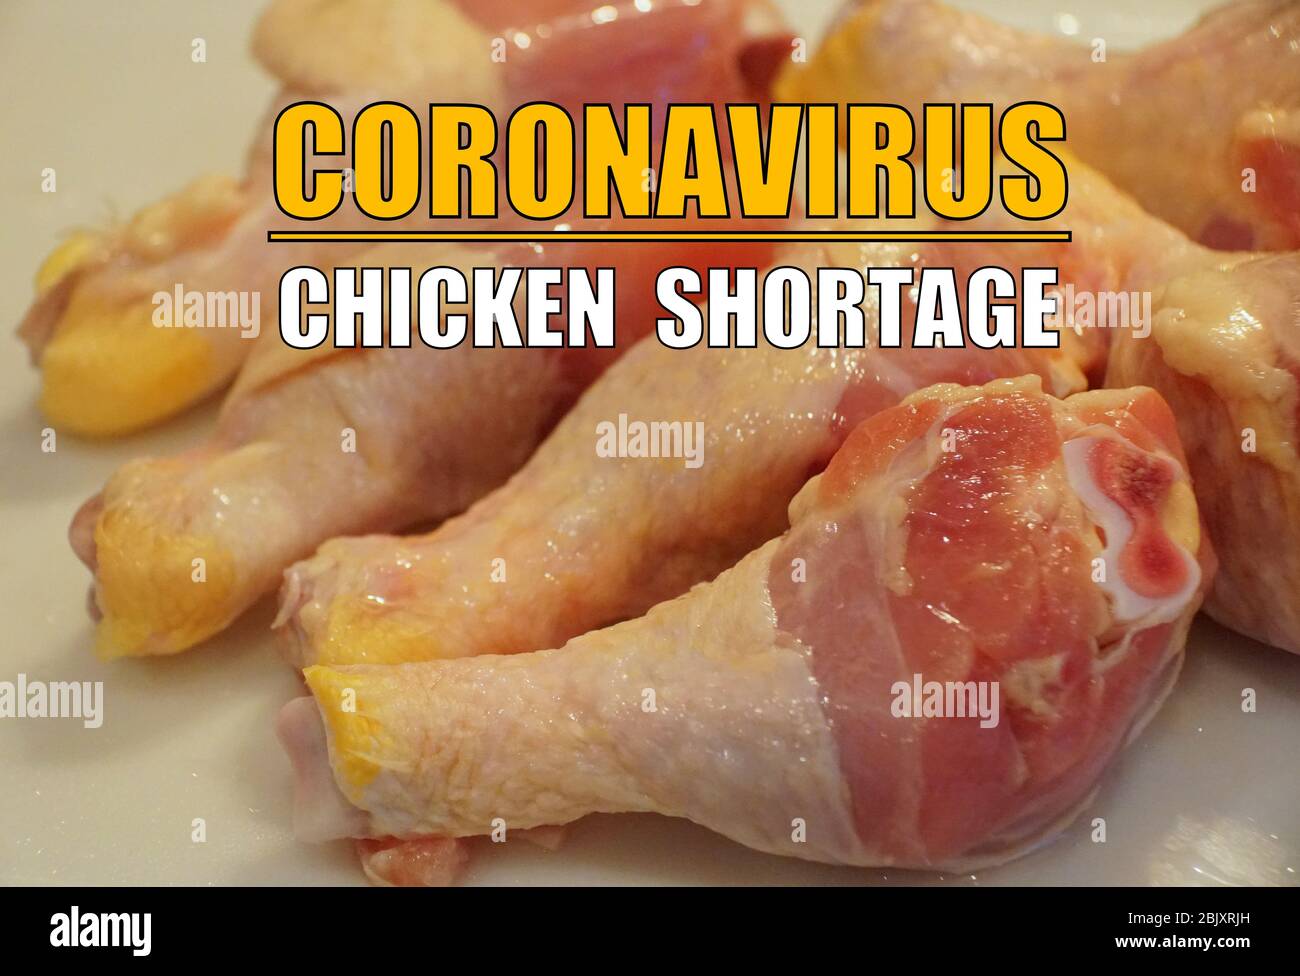 Chicken shortage due to the impact of coronavirus Stock Photo